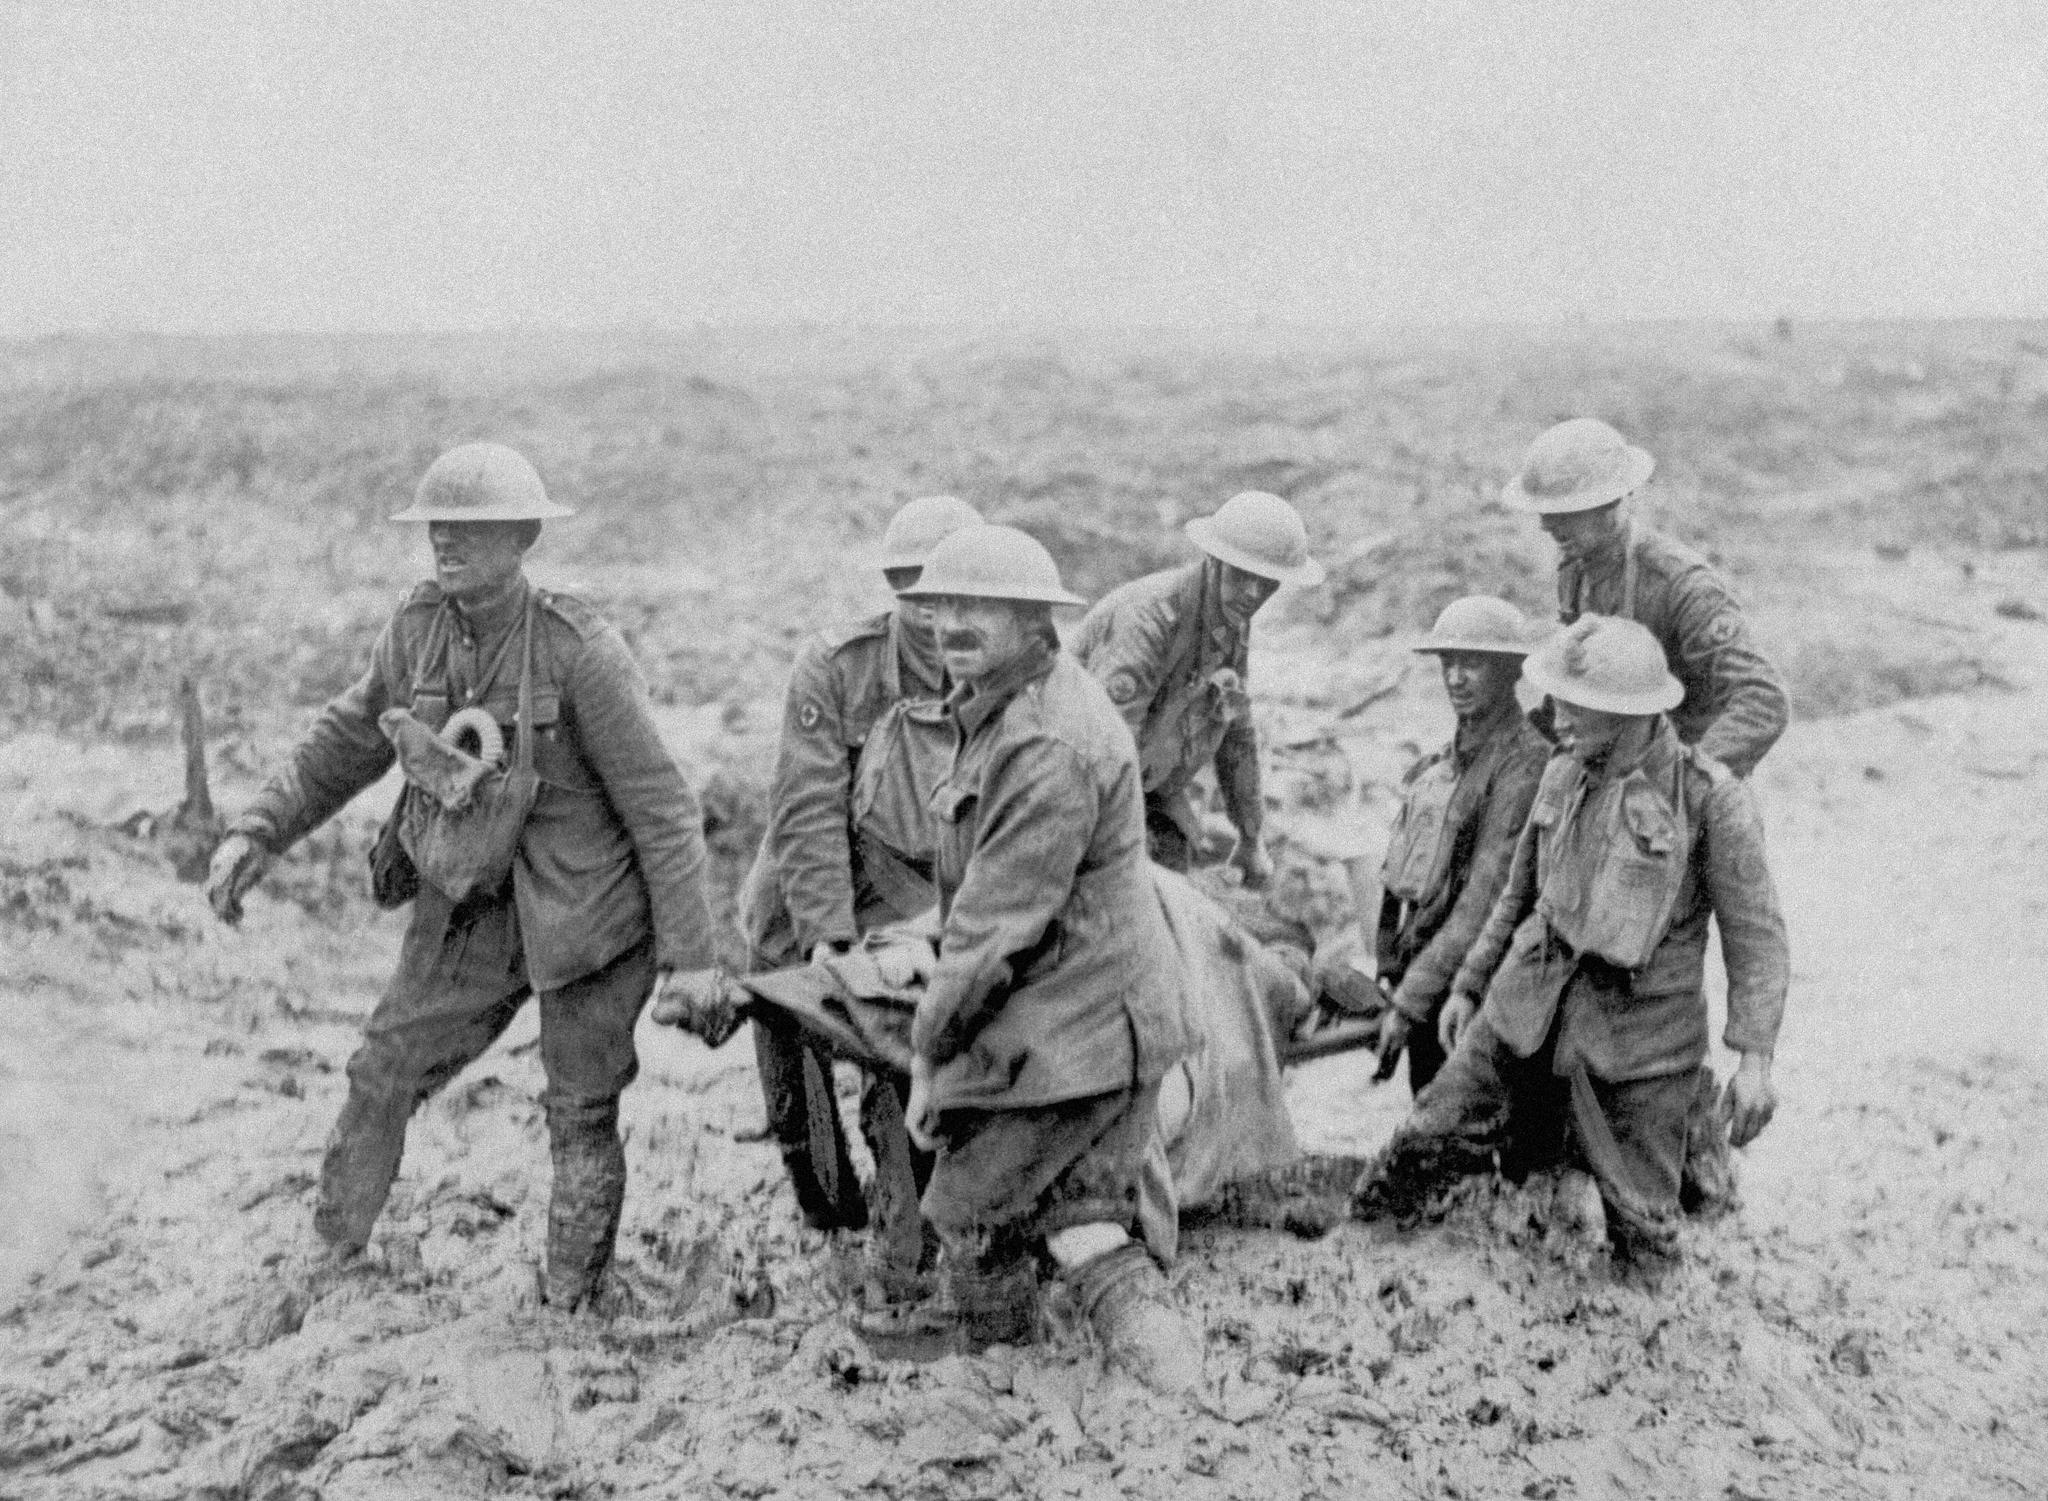  Soldatene levde under umenneskelige forhold i søle og gjørme. På bildet bærer kanadiske soldater en båre nær Boesinghe, Belgia.